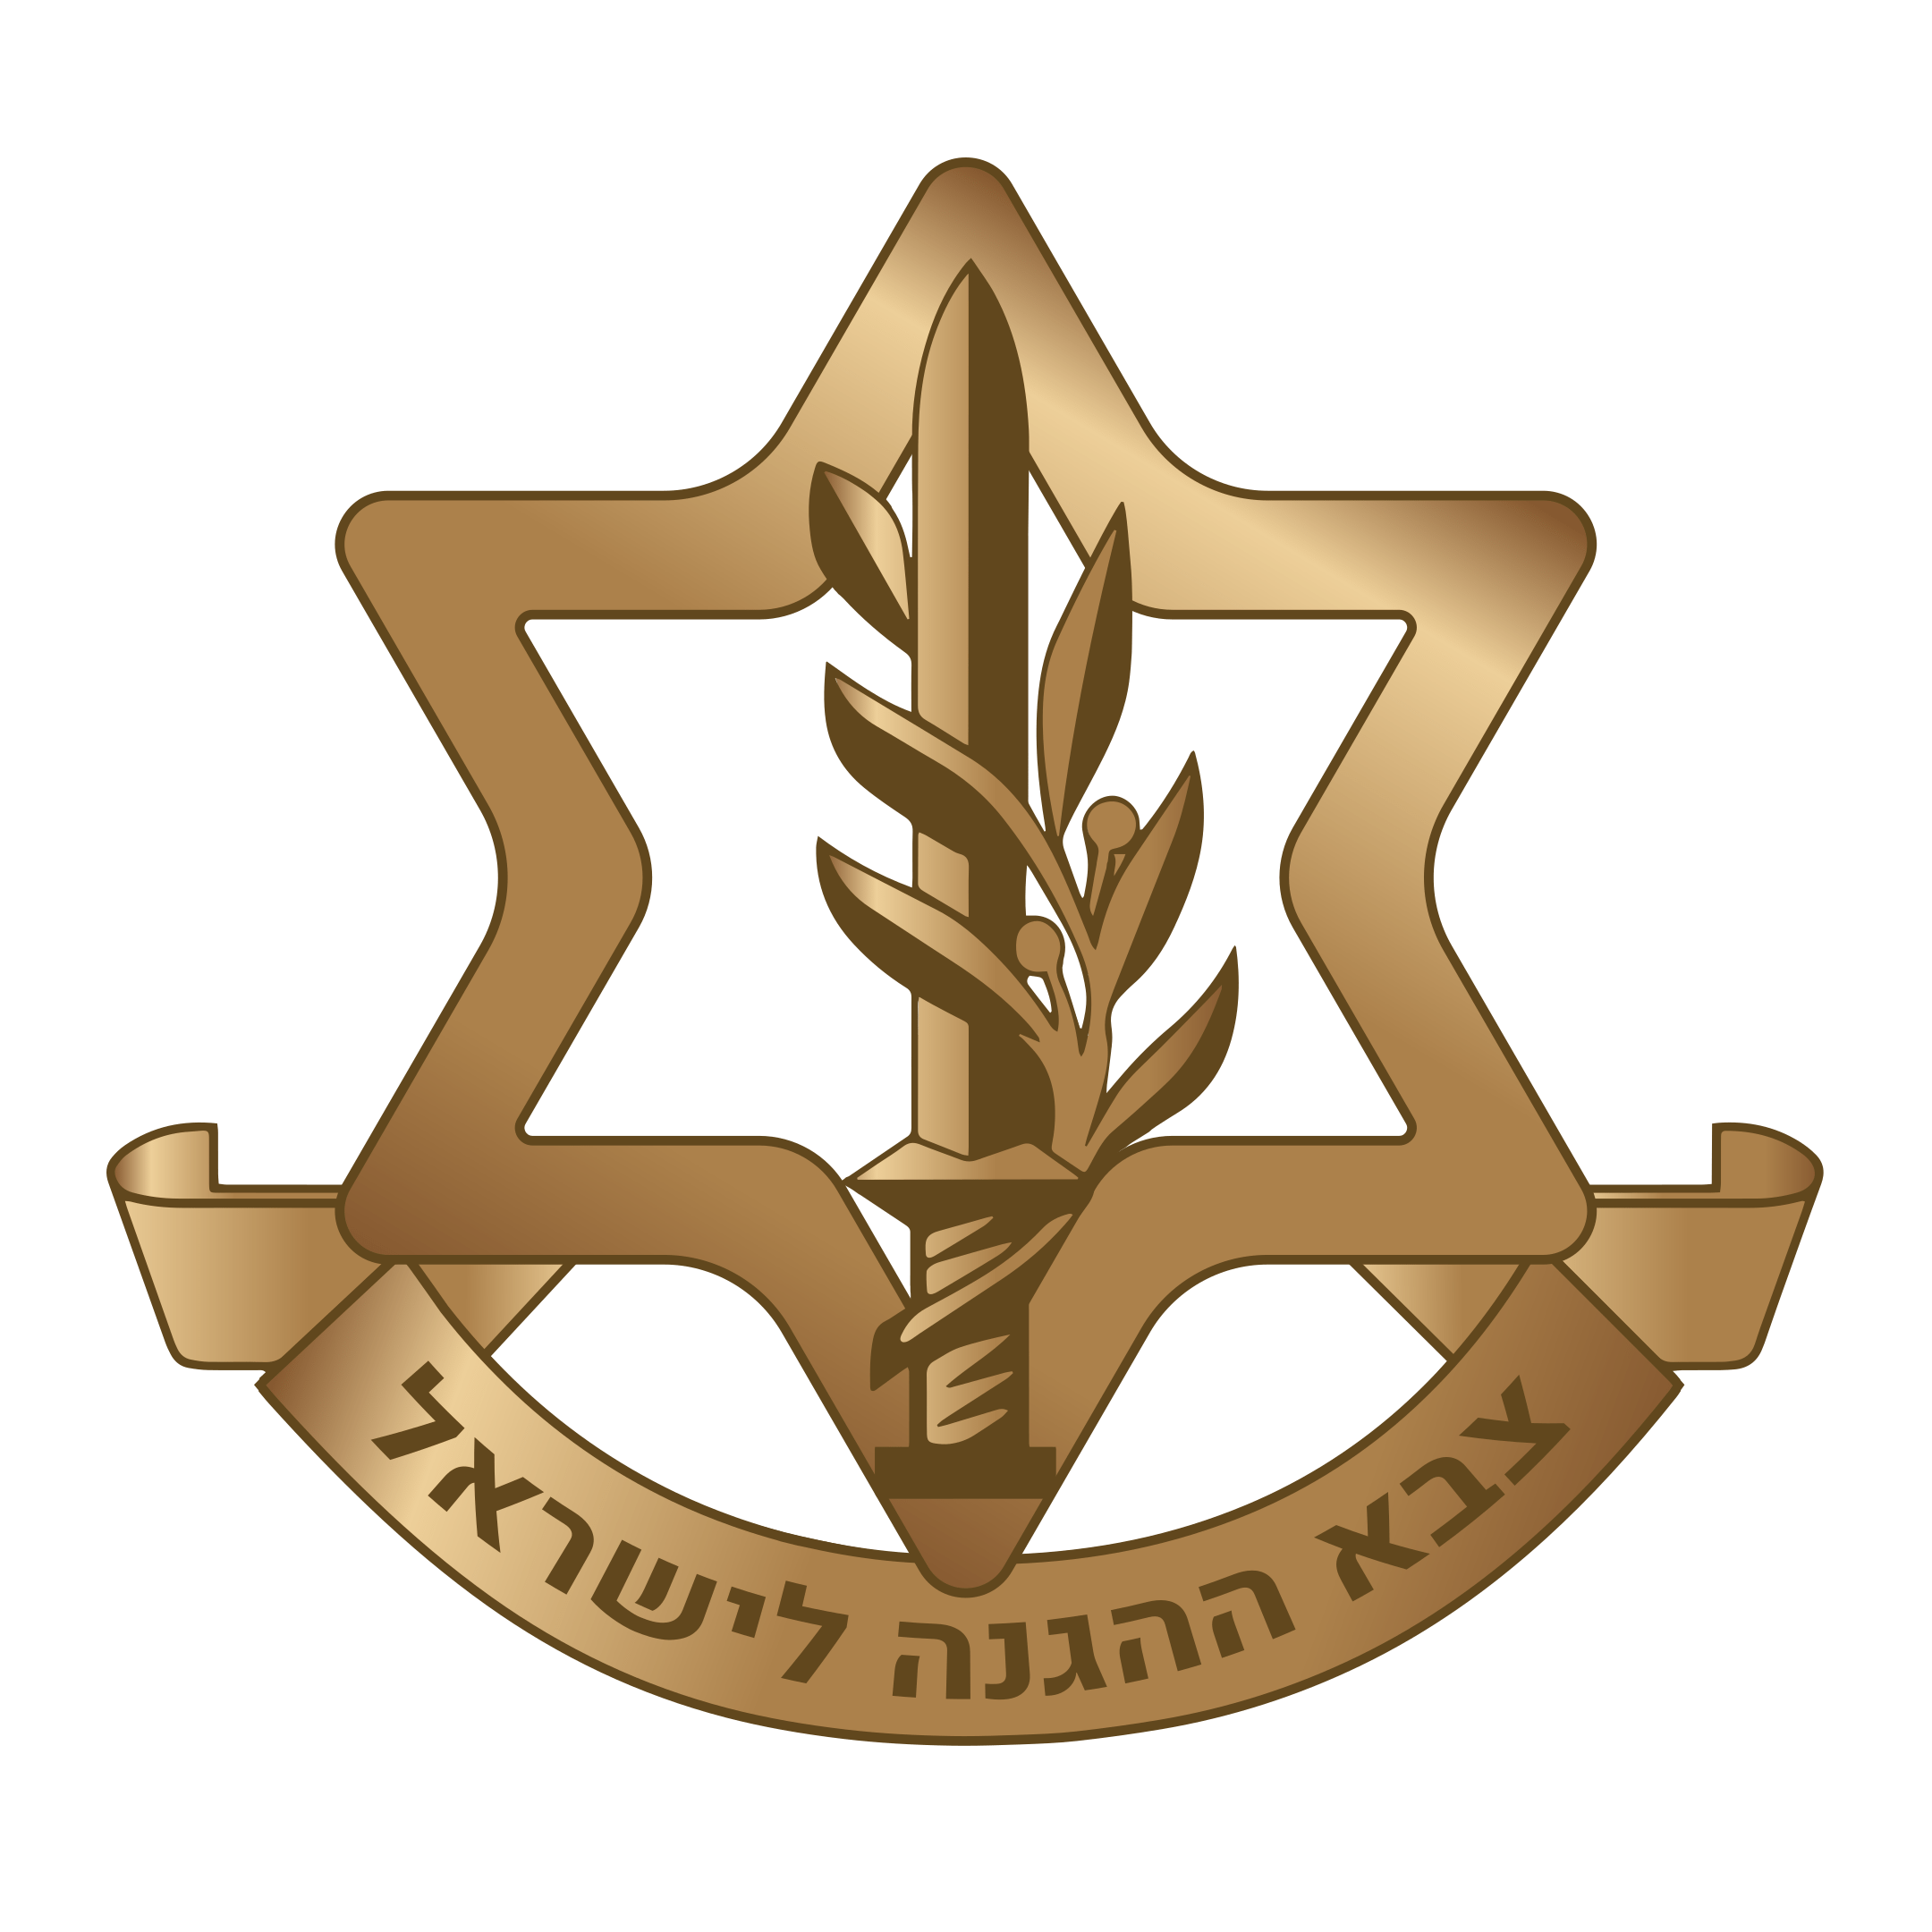 Israel defence forces logo